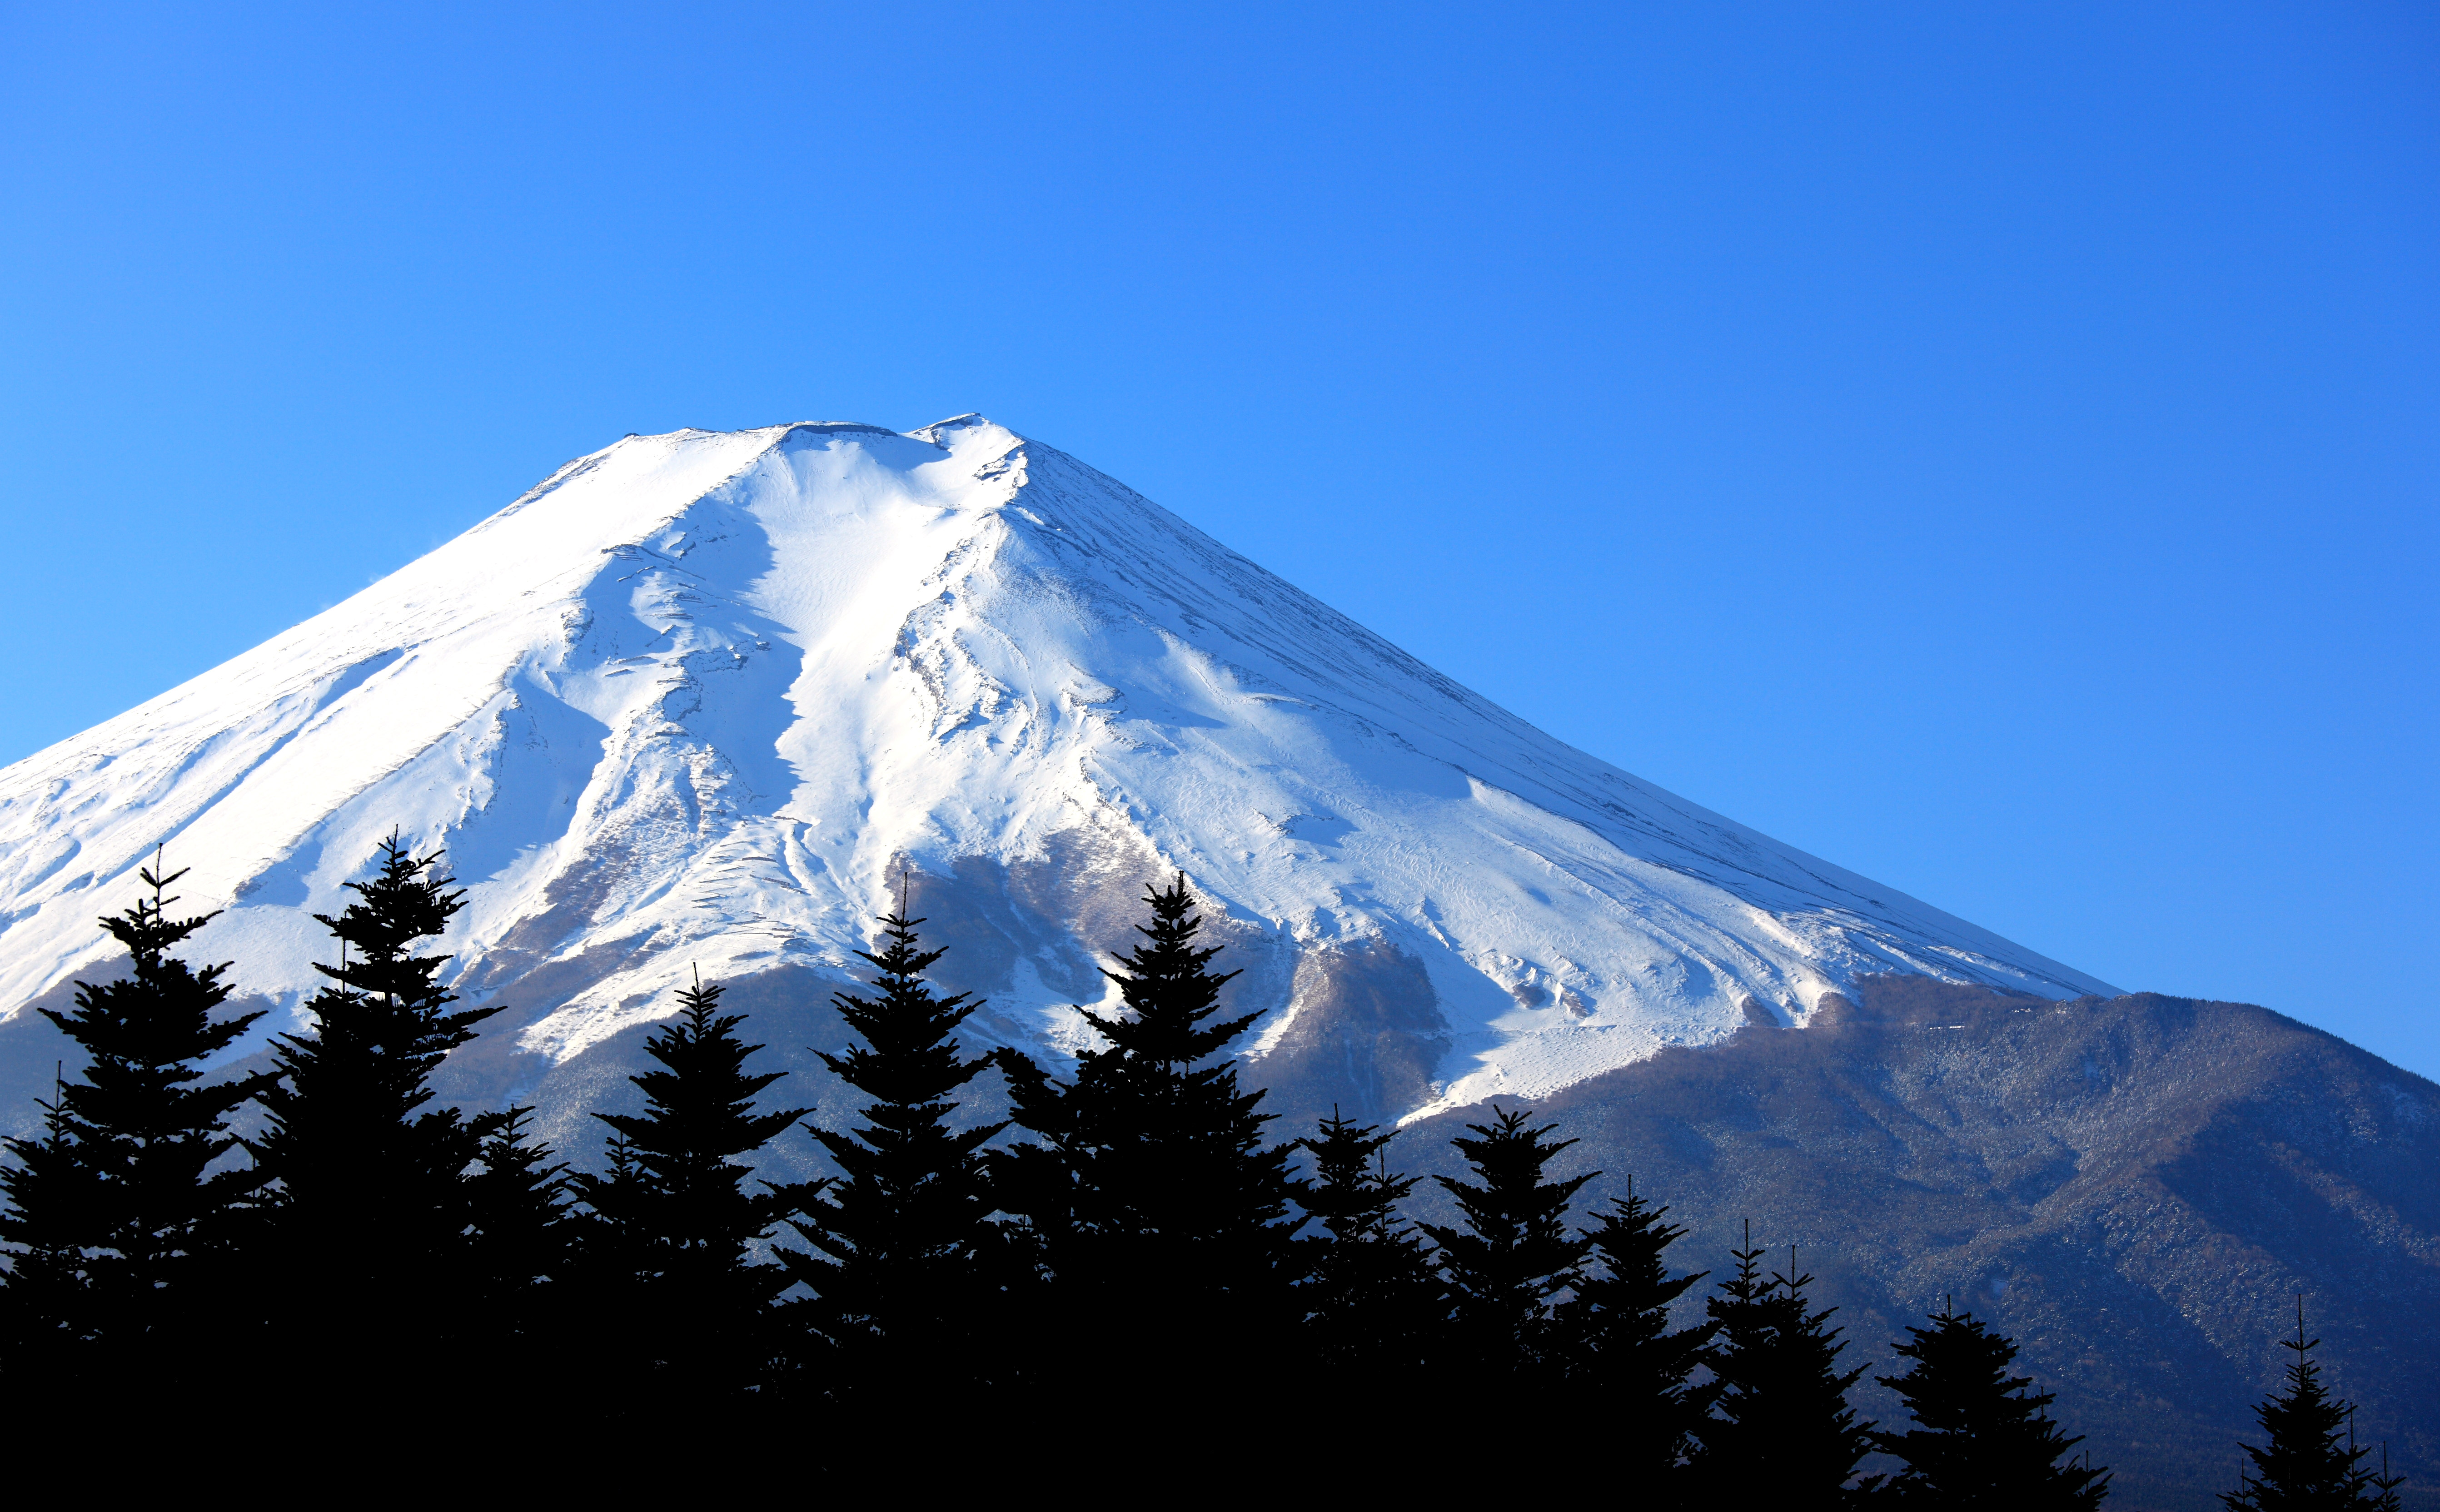 フリー画像 自然風景 山の風景 富士山 日本風景 雪景色 フリー素材 画像素材なら 無料 フリー写真素材のフリーフォト